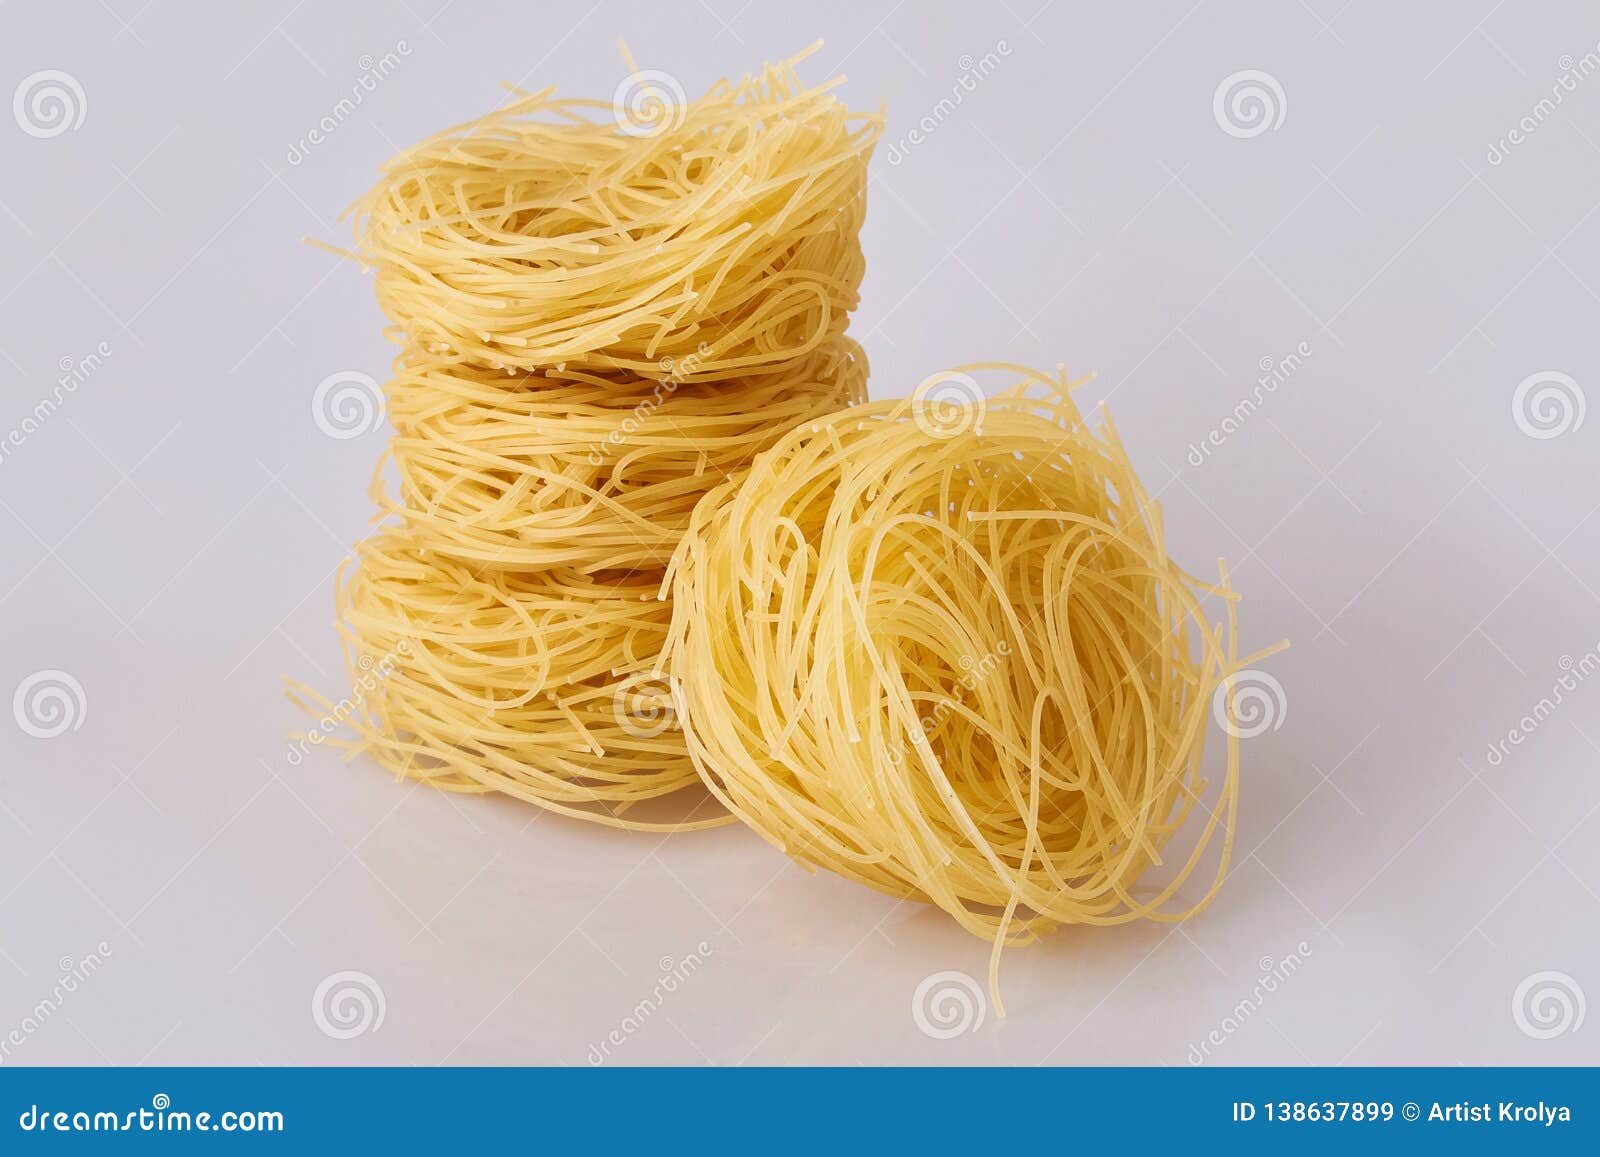 capelli d`angelo, angel`s hair - pasta. homemade pasta. italian cuisine. egg noodles.